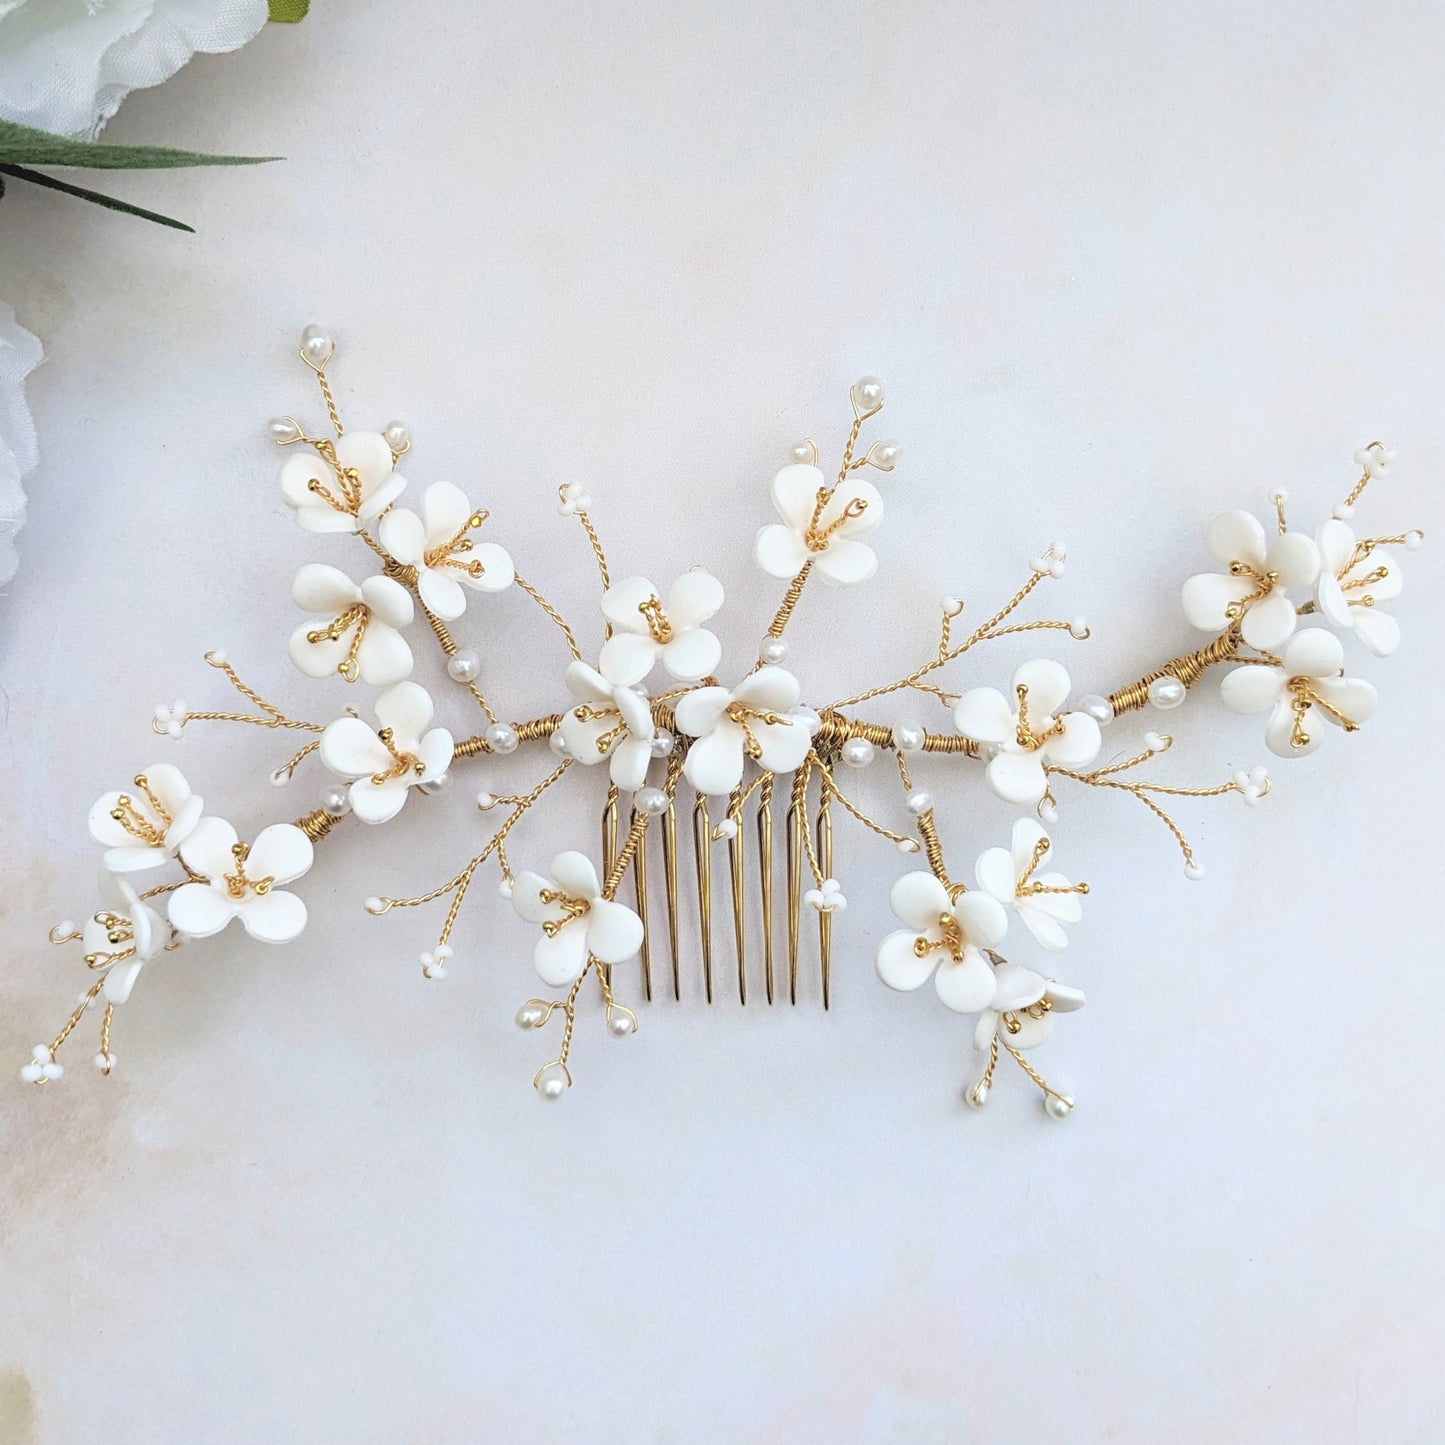 Floral bridal hair accessories - Susie Warner